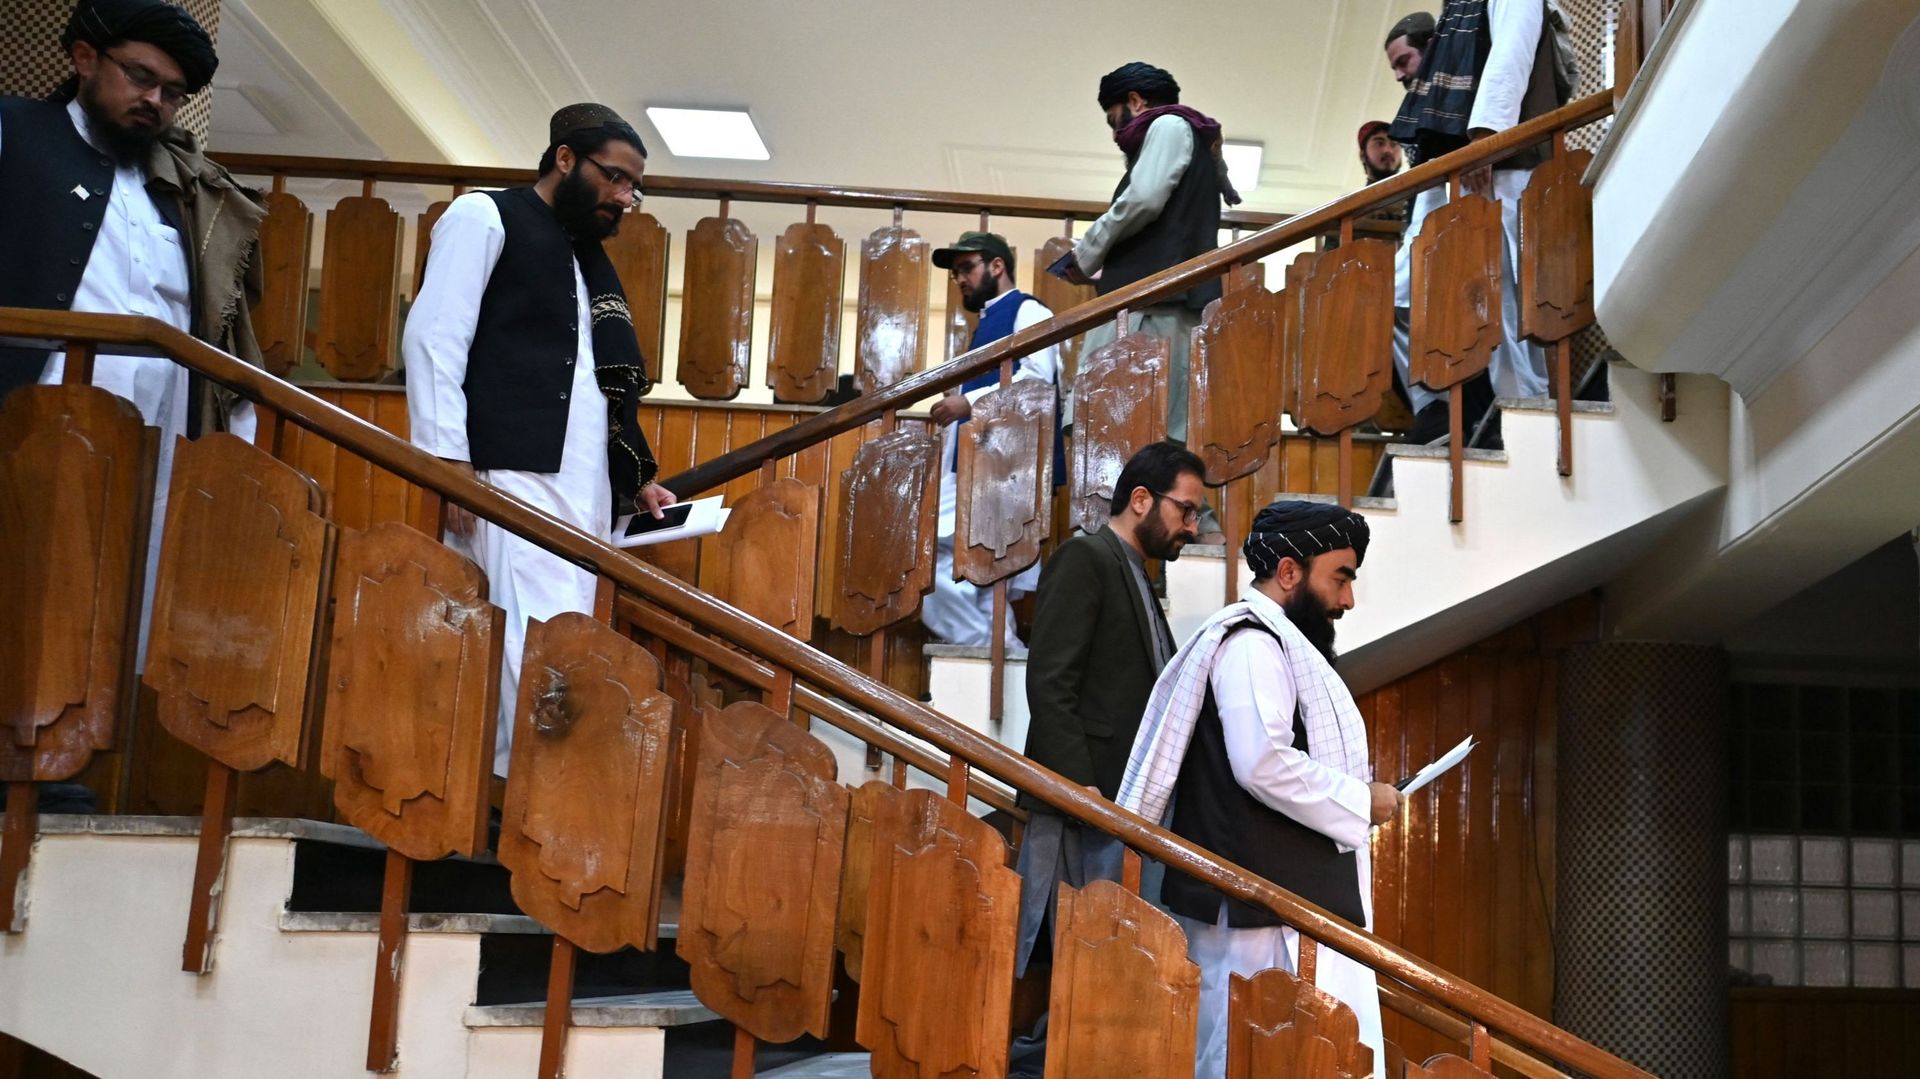 Le porte-parole des talibans, Zabihullah Mujahid (en bas à droite), et le porte-parole des services de renseignement, Khalil Hamraz (à gauche), arrivent pour donner une conférence de presse au centre gouvernemental d'information et de presse à Kaboul.